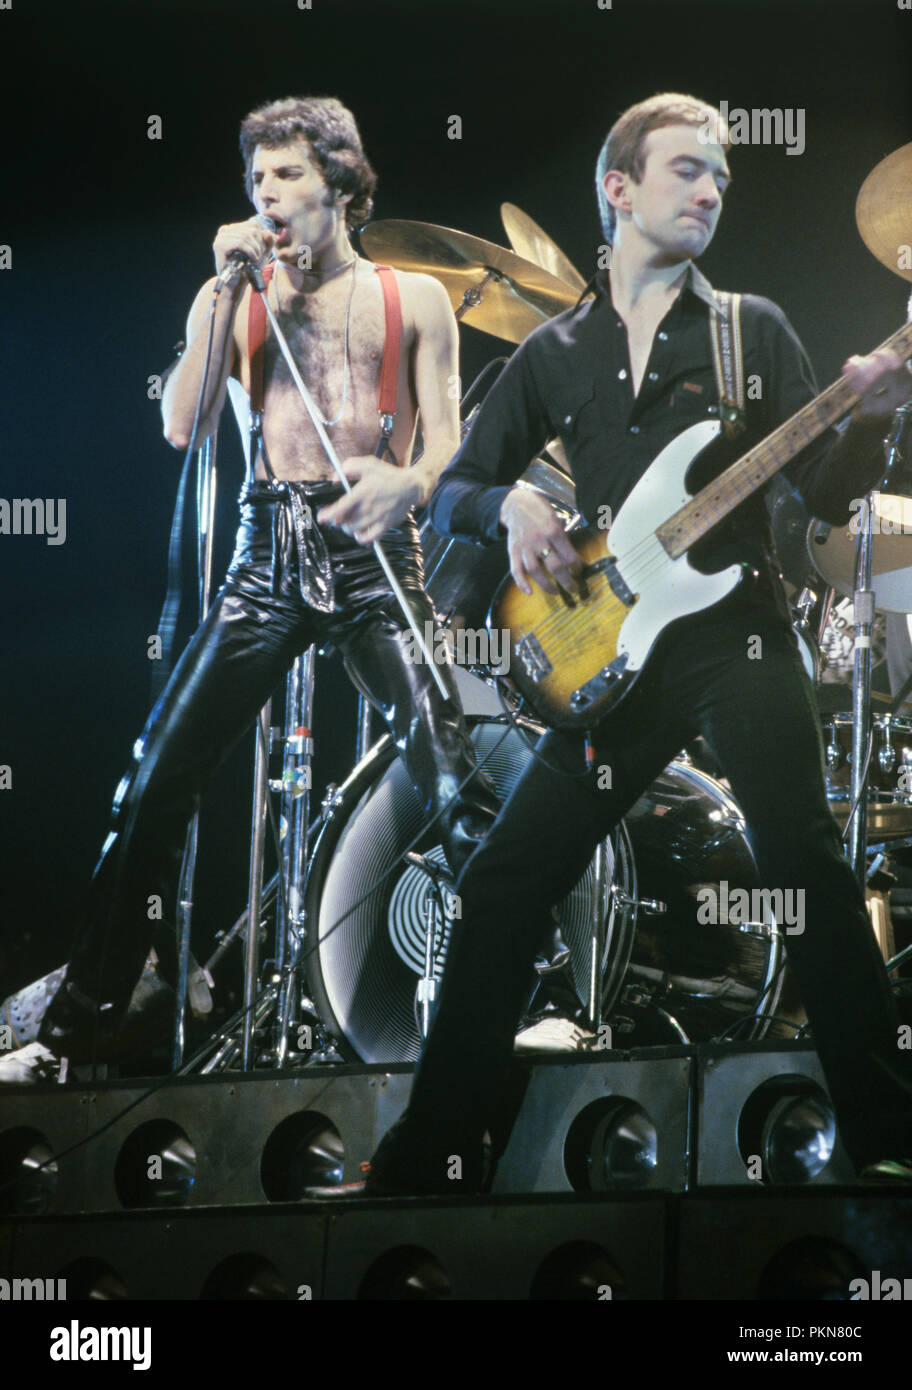 Pays-Bas - JANVIER 29 : AHOY photo de LA REINE, Freddie Mercury, John Deacon et Brian May sur scène (photo Gijsbert Hanekroot) Banque D'Images